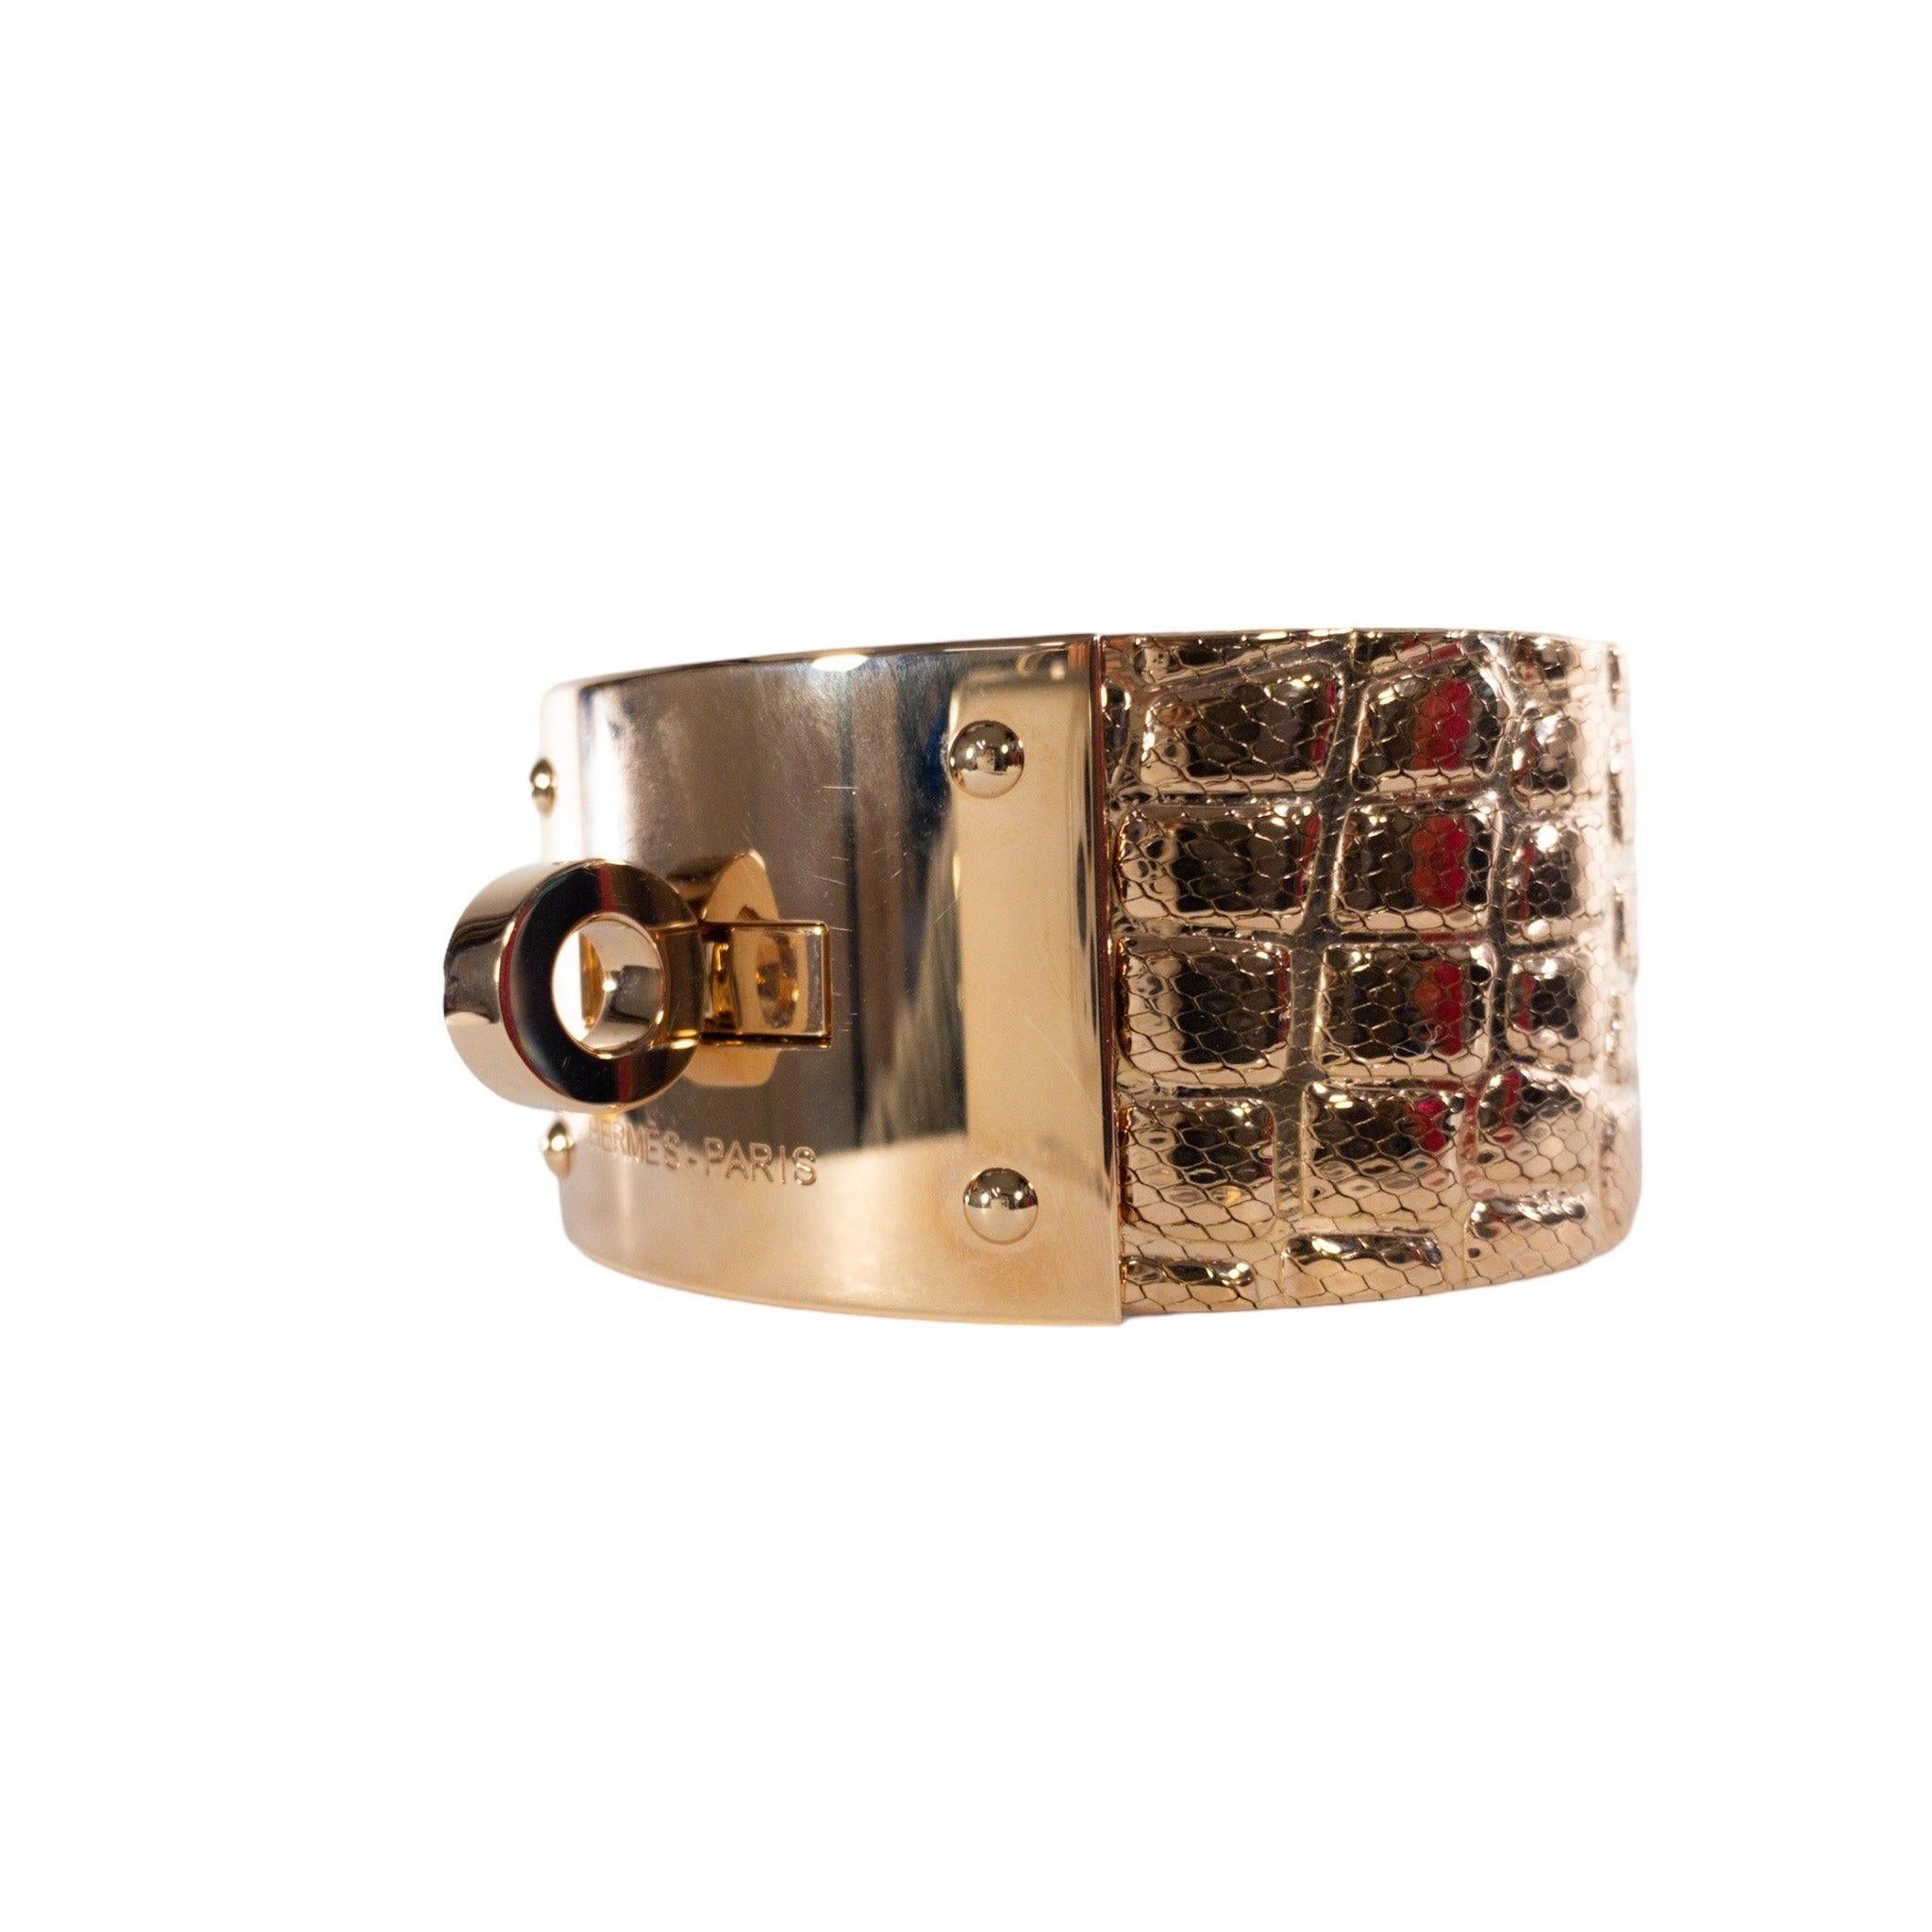 hermès kelly bracelet gold